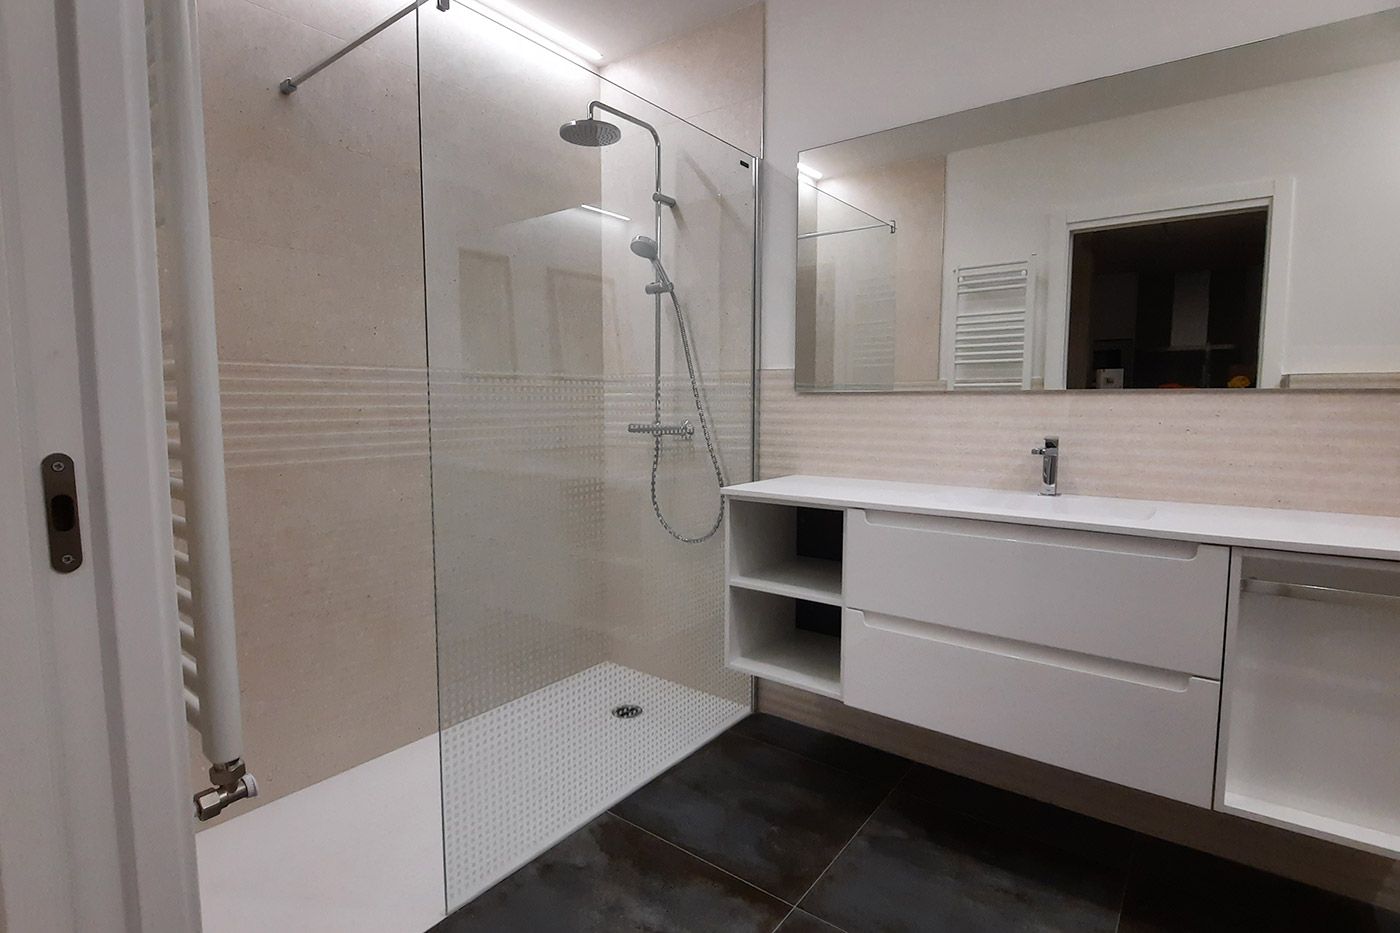 Reforma interior pisos baños